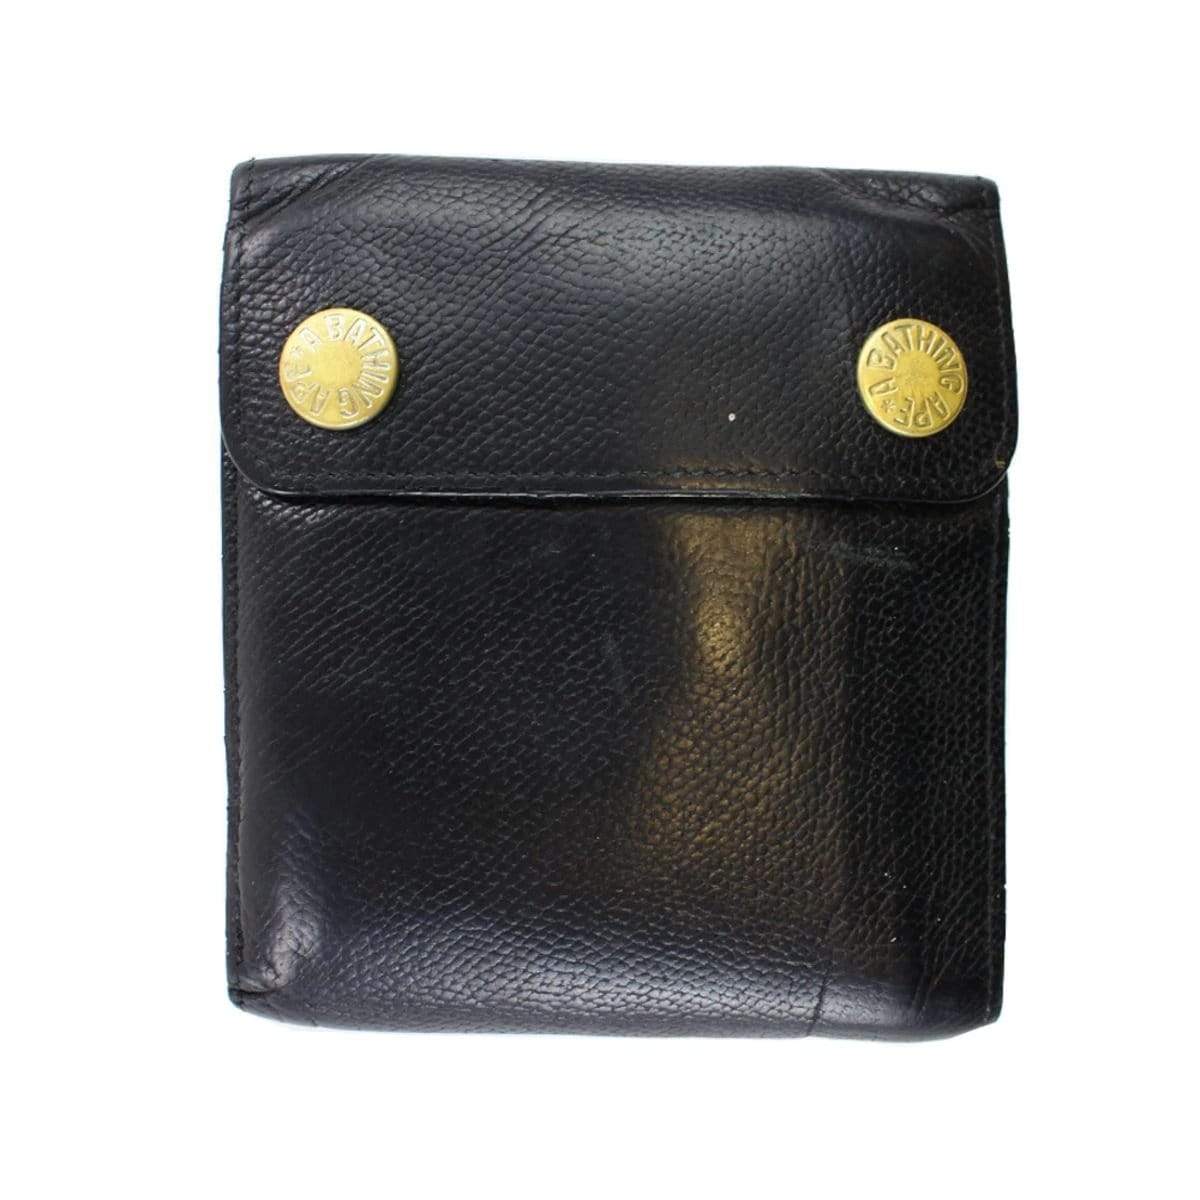 Bape Leather Wallet - SaruGeneral